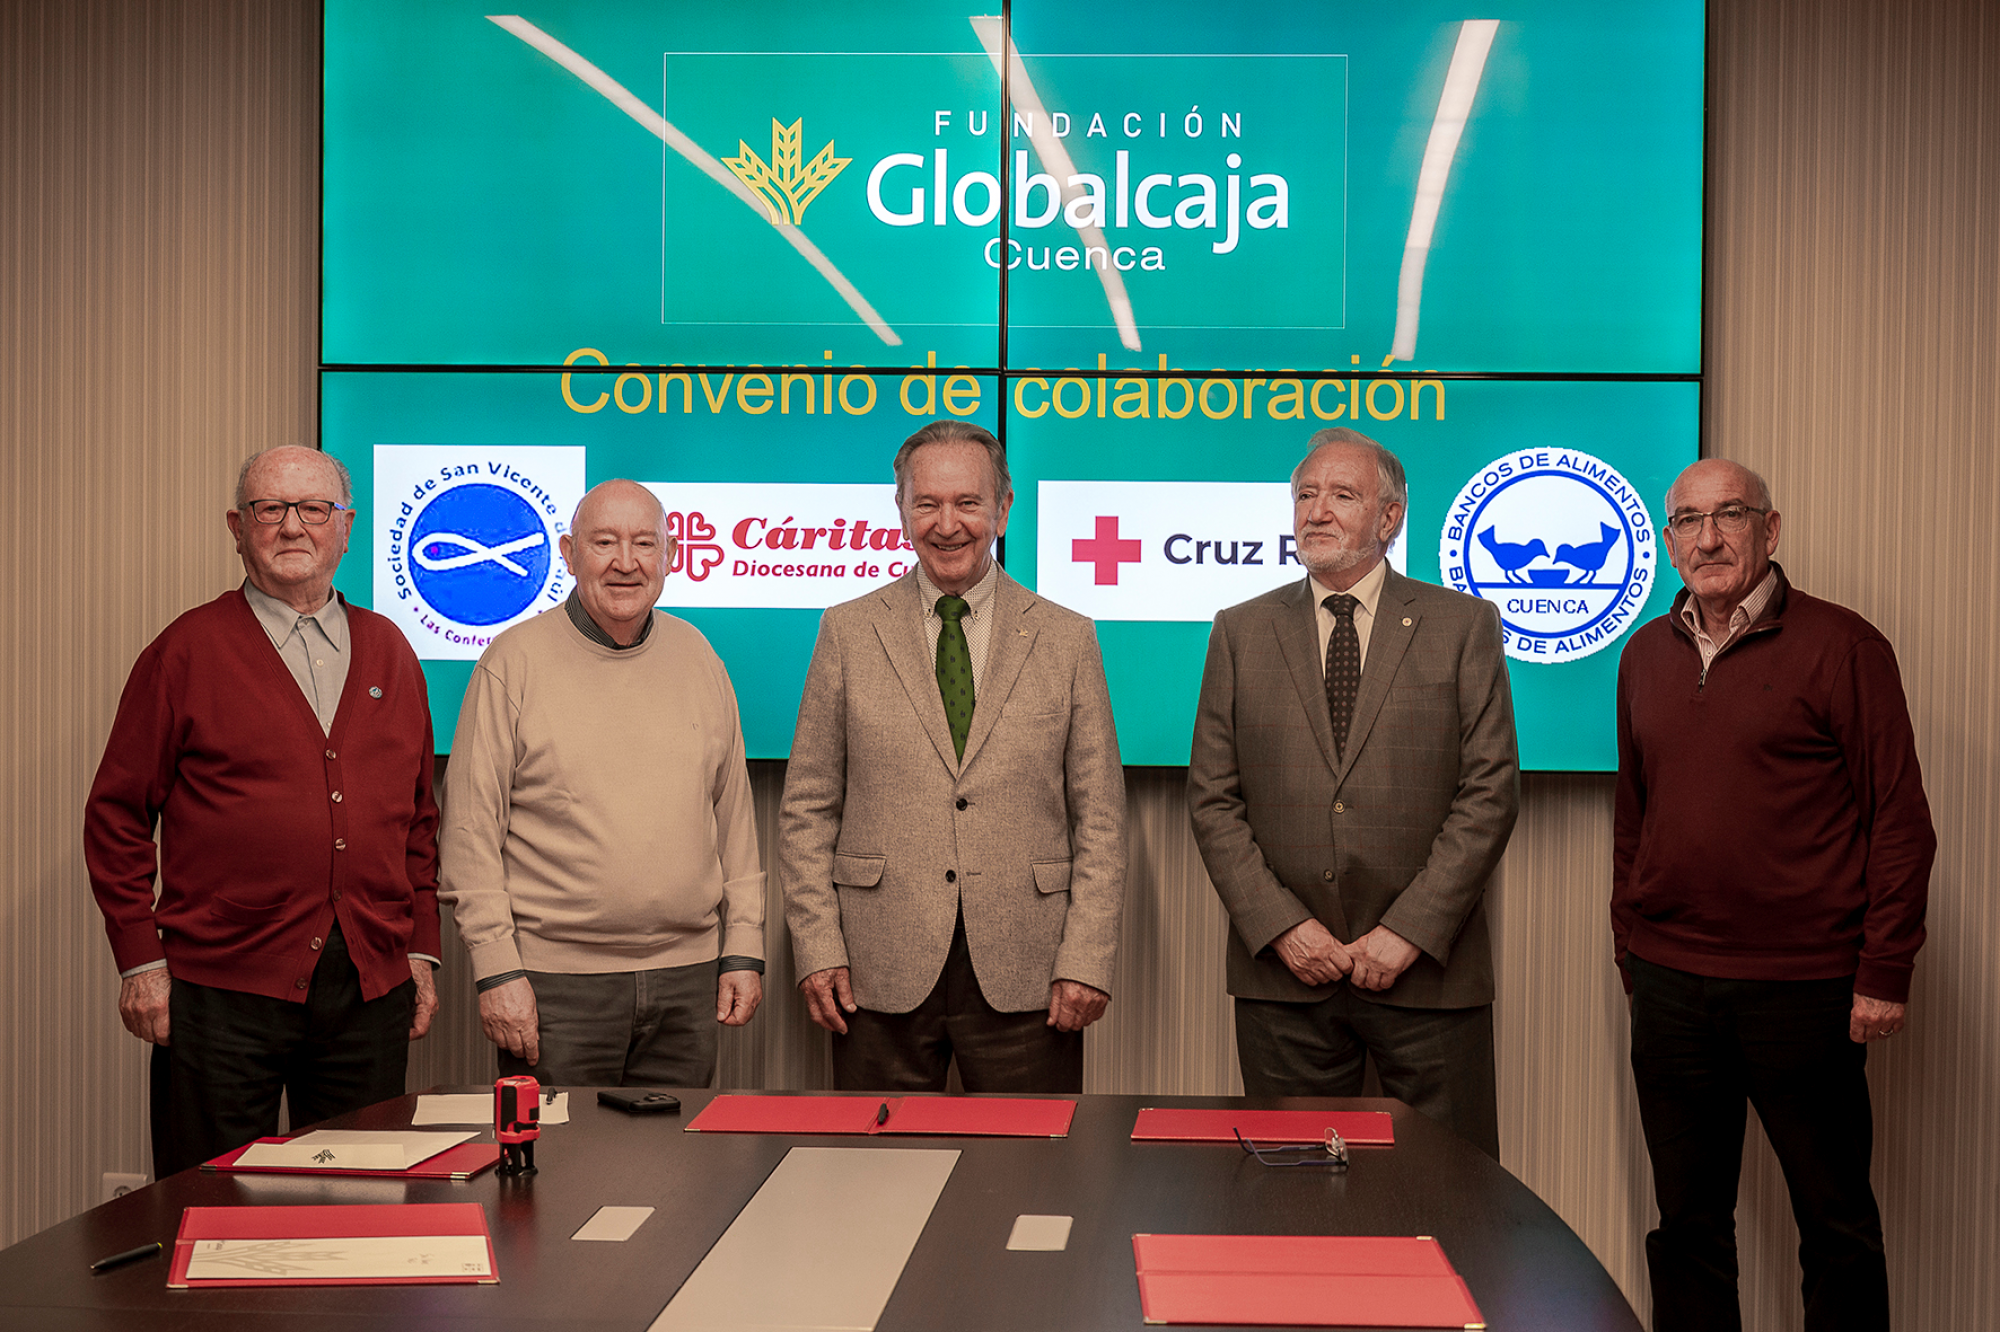 La Fundación Globalcaja Cuenca renueva para el 2023 su compromiso con Cáritas, Cruz Roja, Banco de Alimentos y San Vicente de Paúl facilitando que mantengan su labor socioasistencial